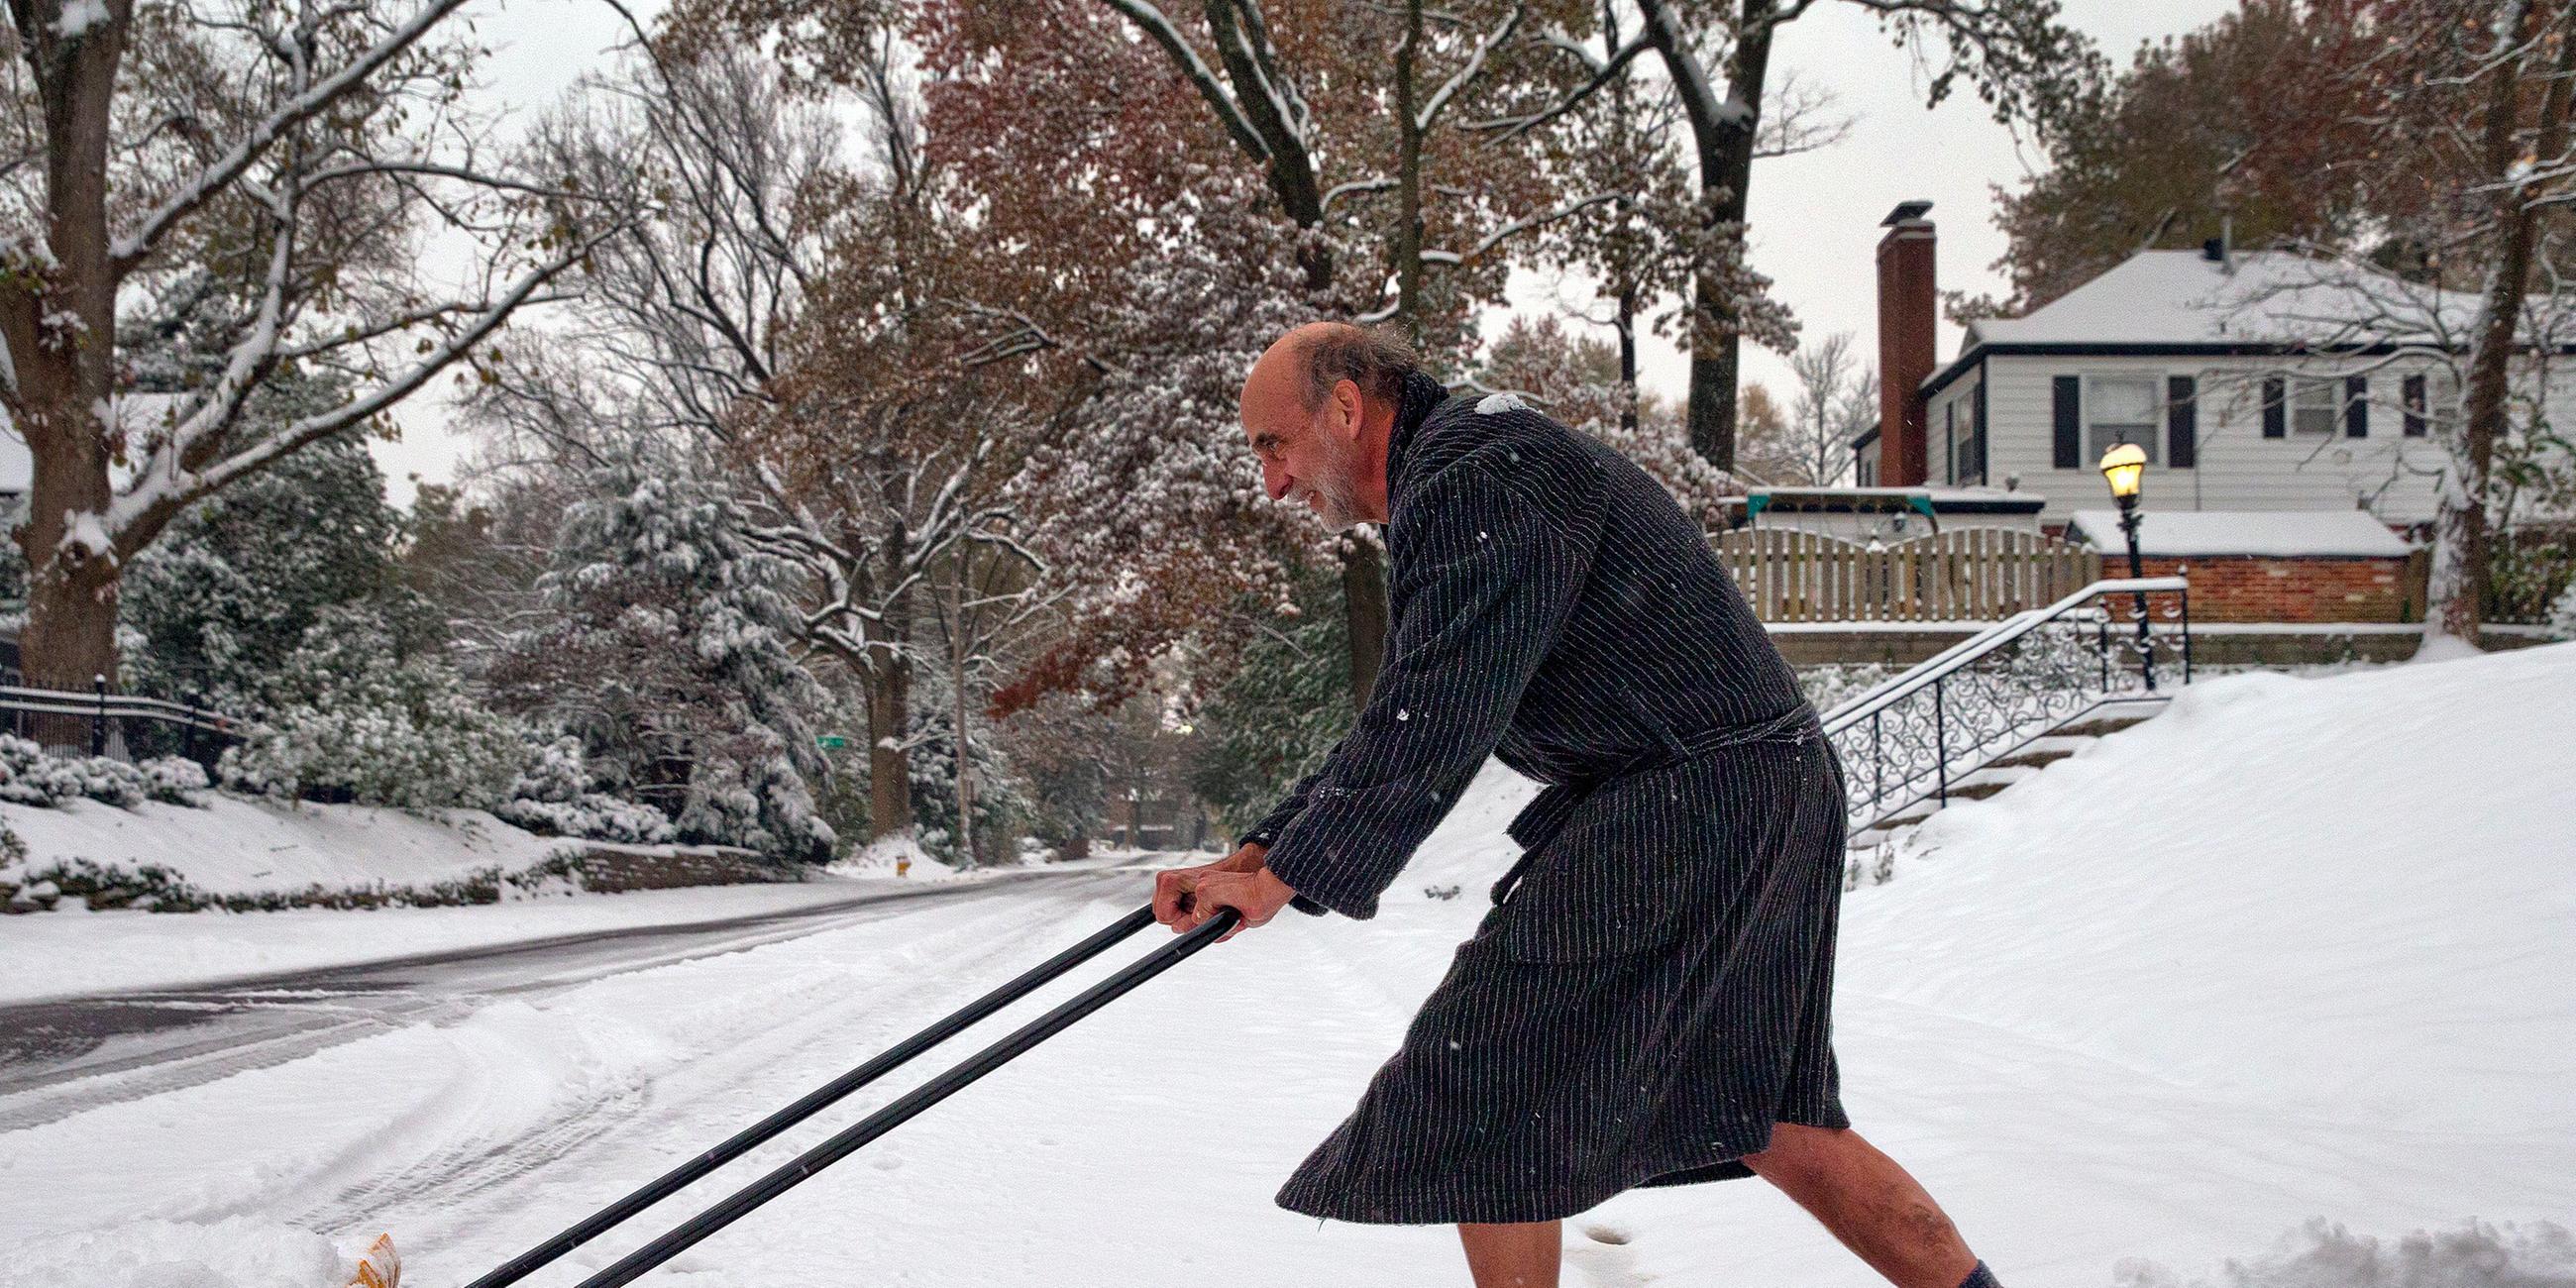 Archiv: Ein Mann räumt Schnee von seiner Einfahrt, aufgenommen am 15.11.2018 in St.Louis, USA